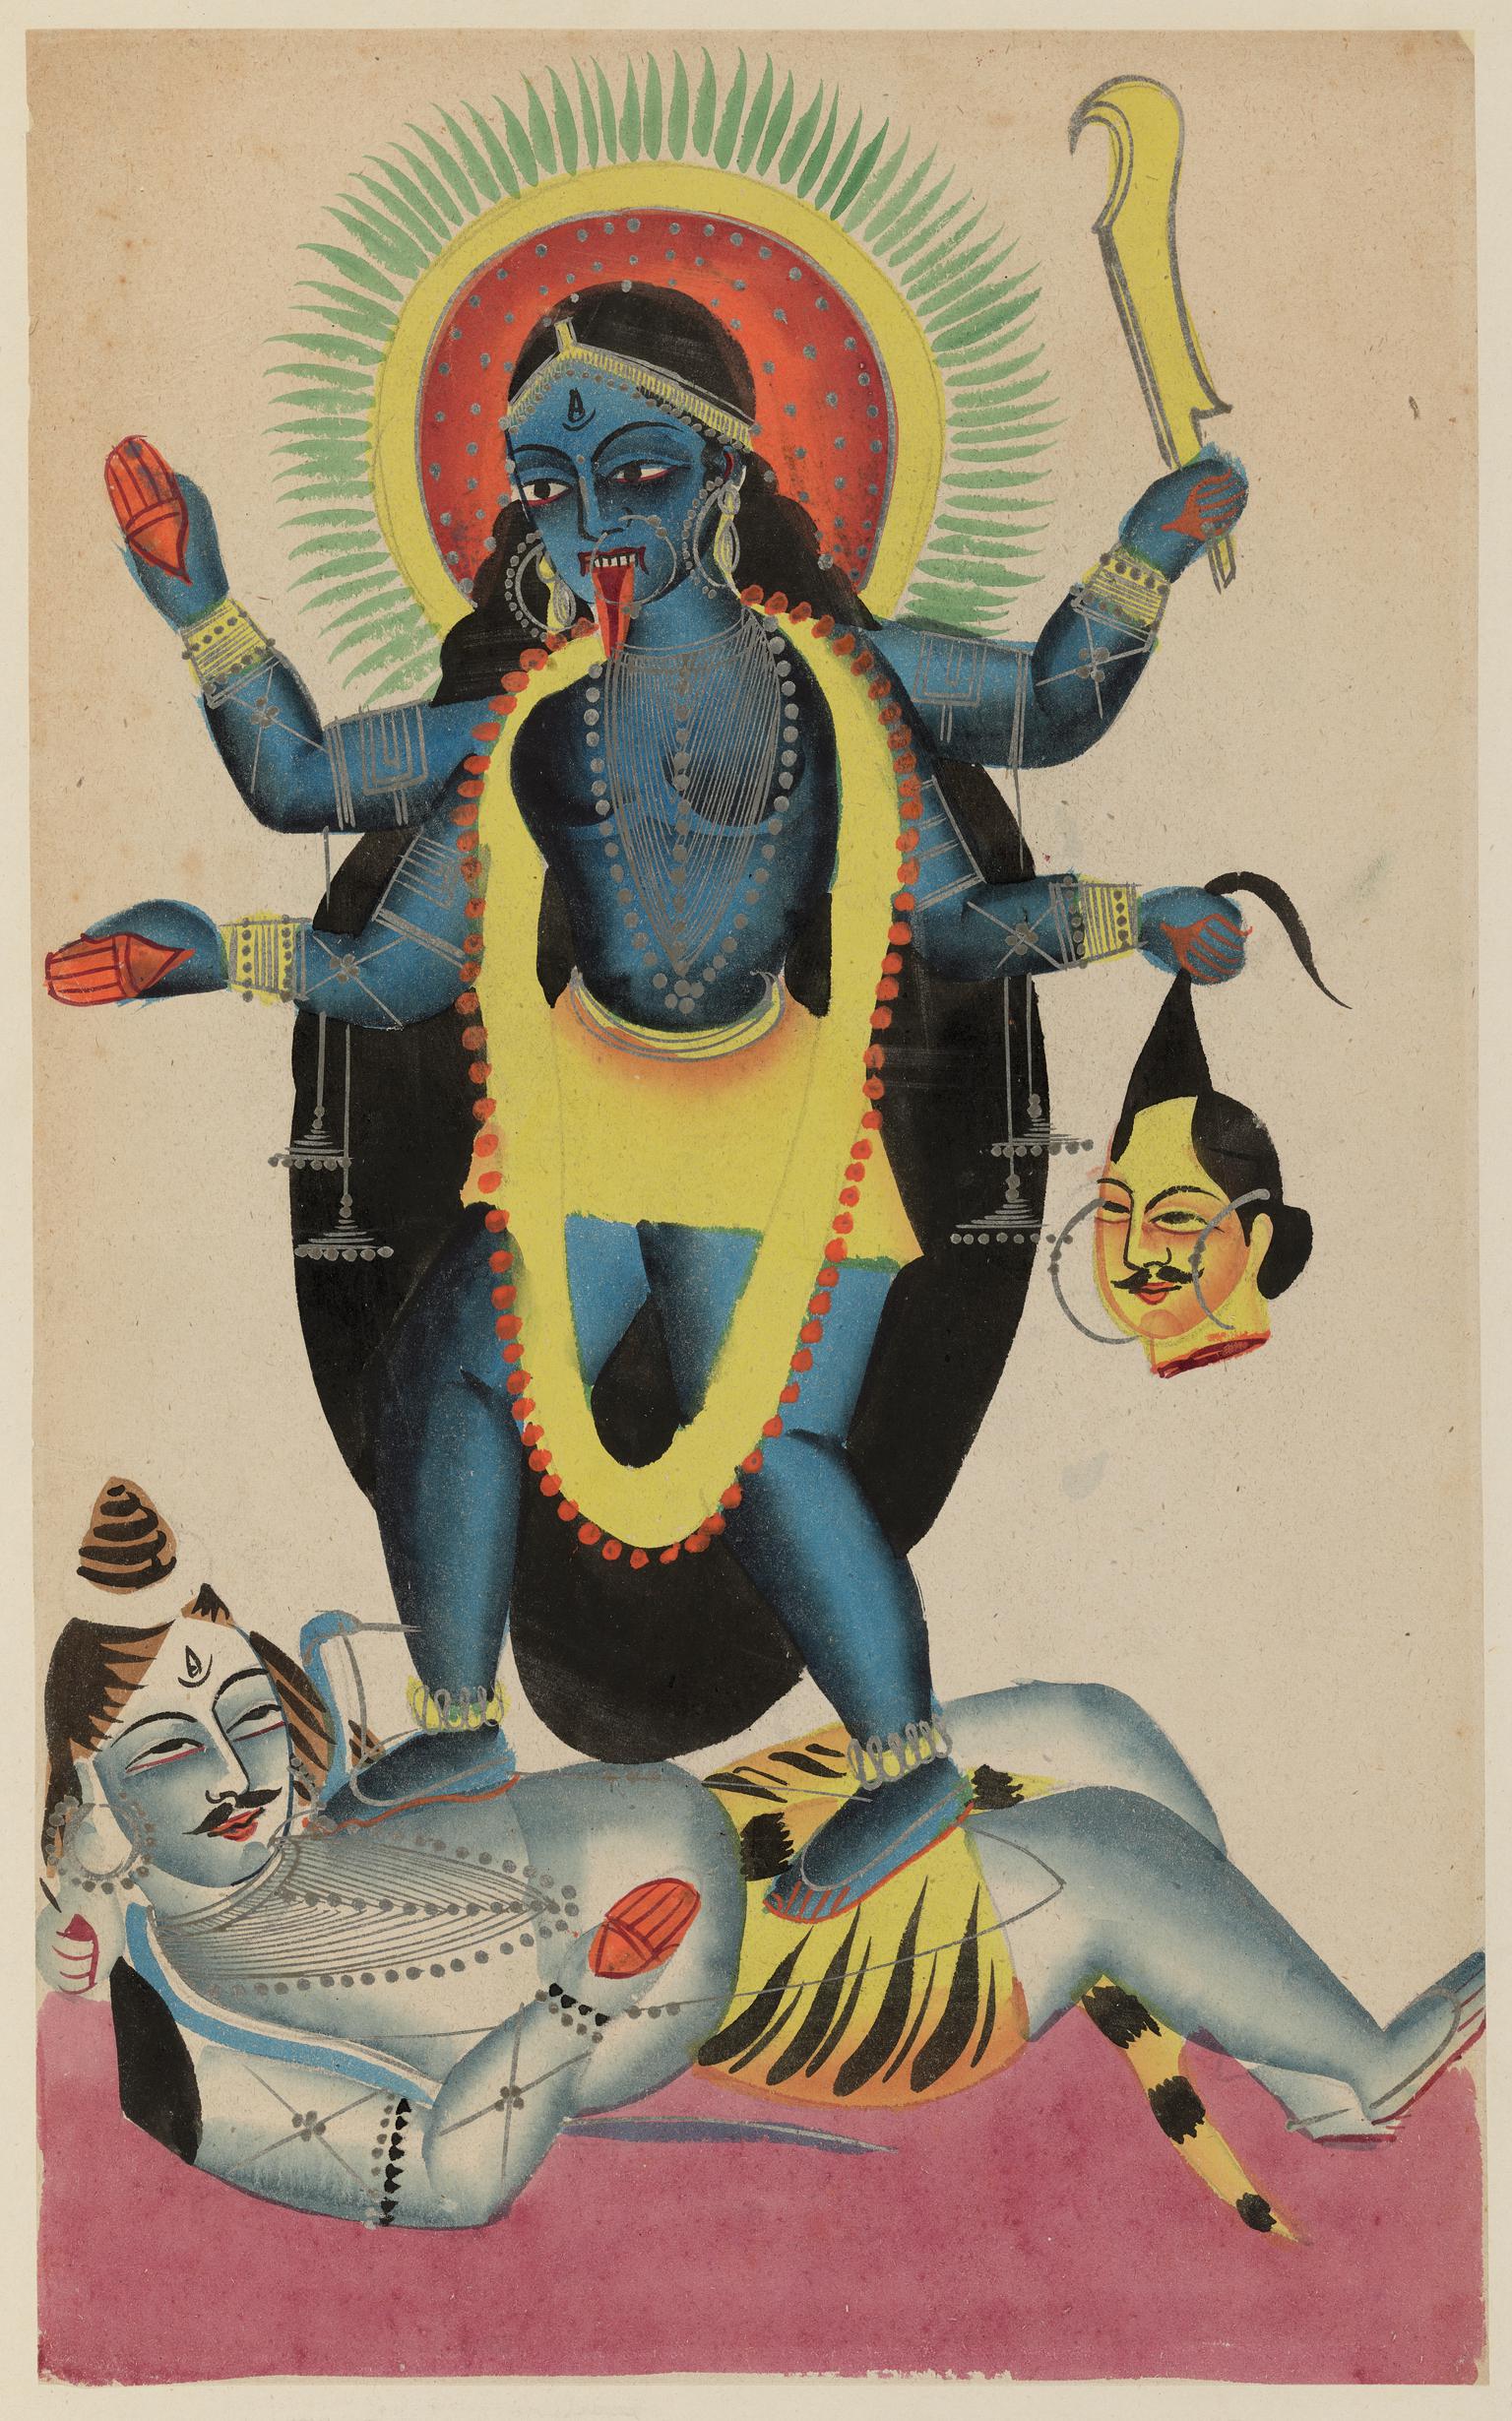 Kali standing on Siva